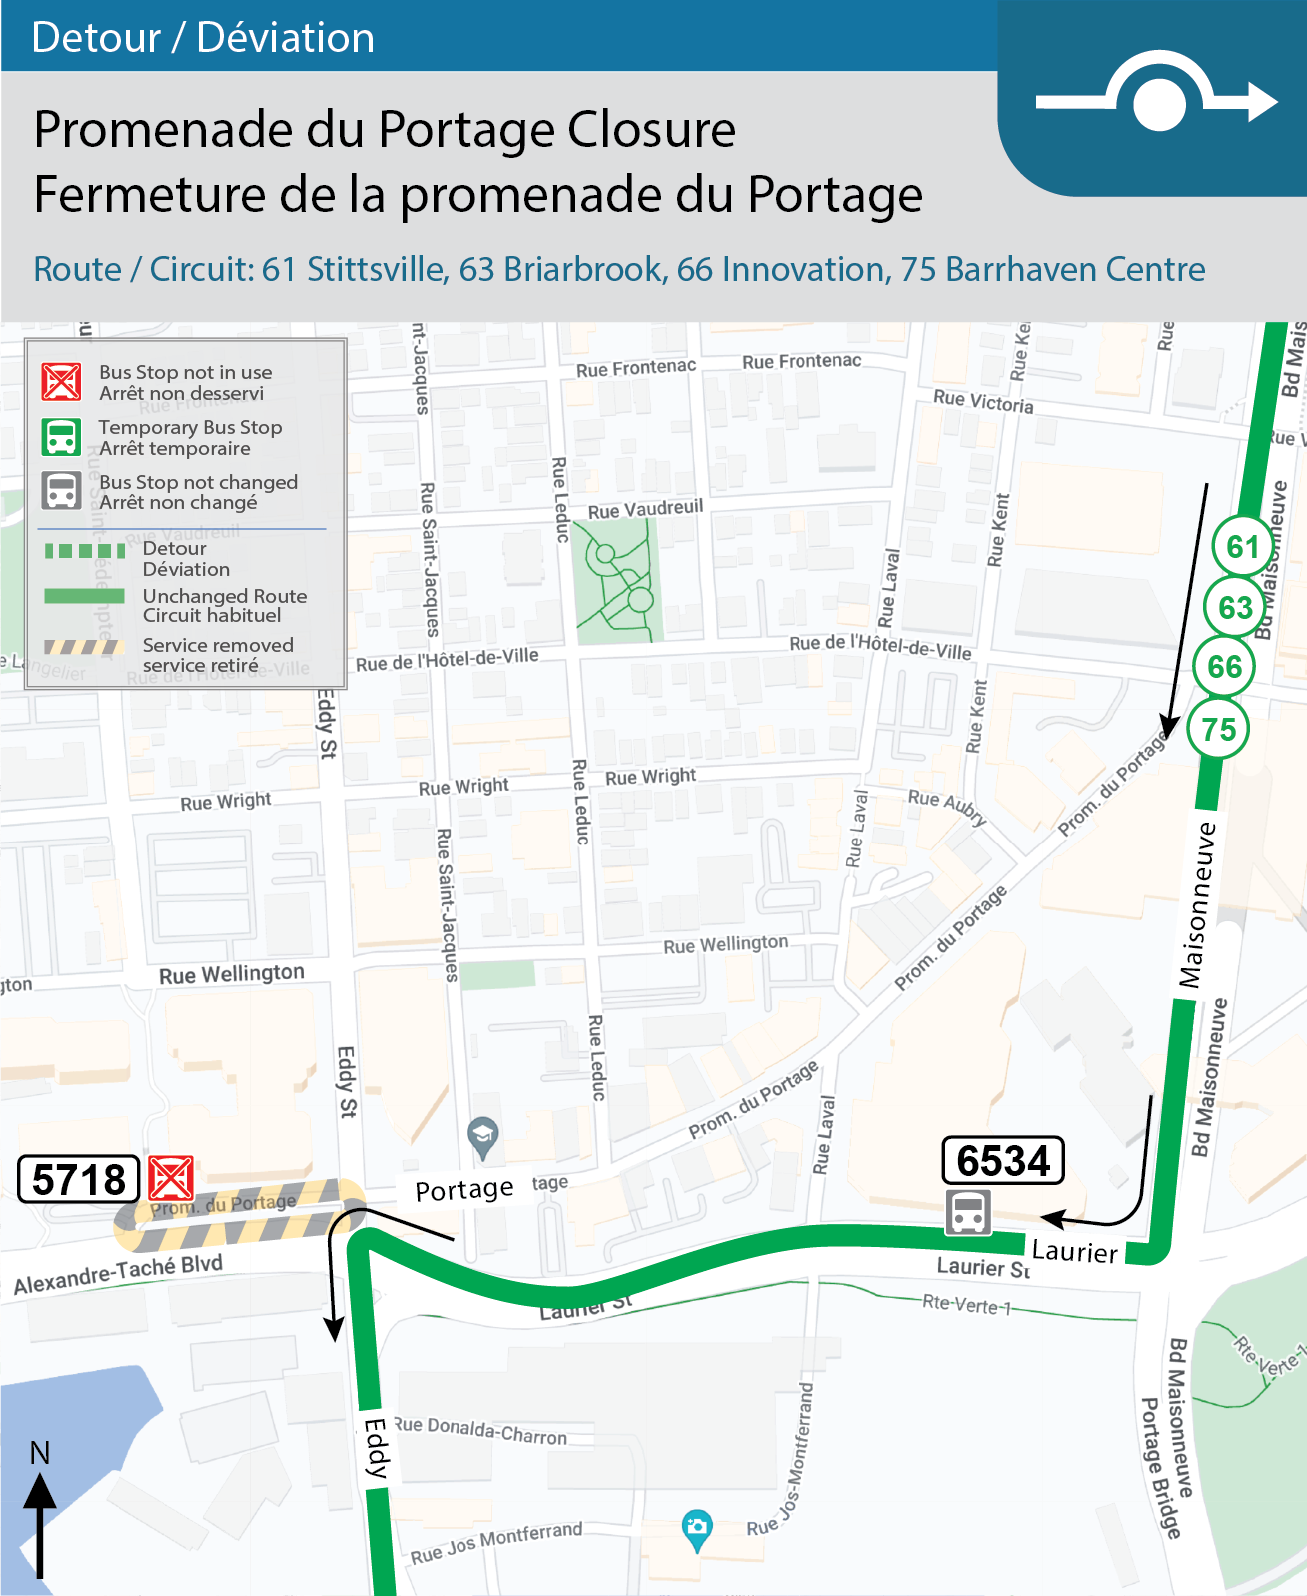 Detour map for Routes 61 Stittesville, 63 Briarbrook, 66 Innovation, 75 Barrhaven Centre: Promenade du Portage closure